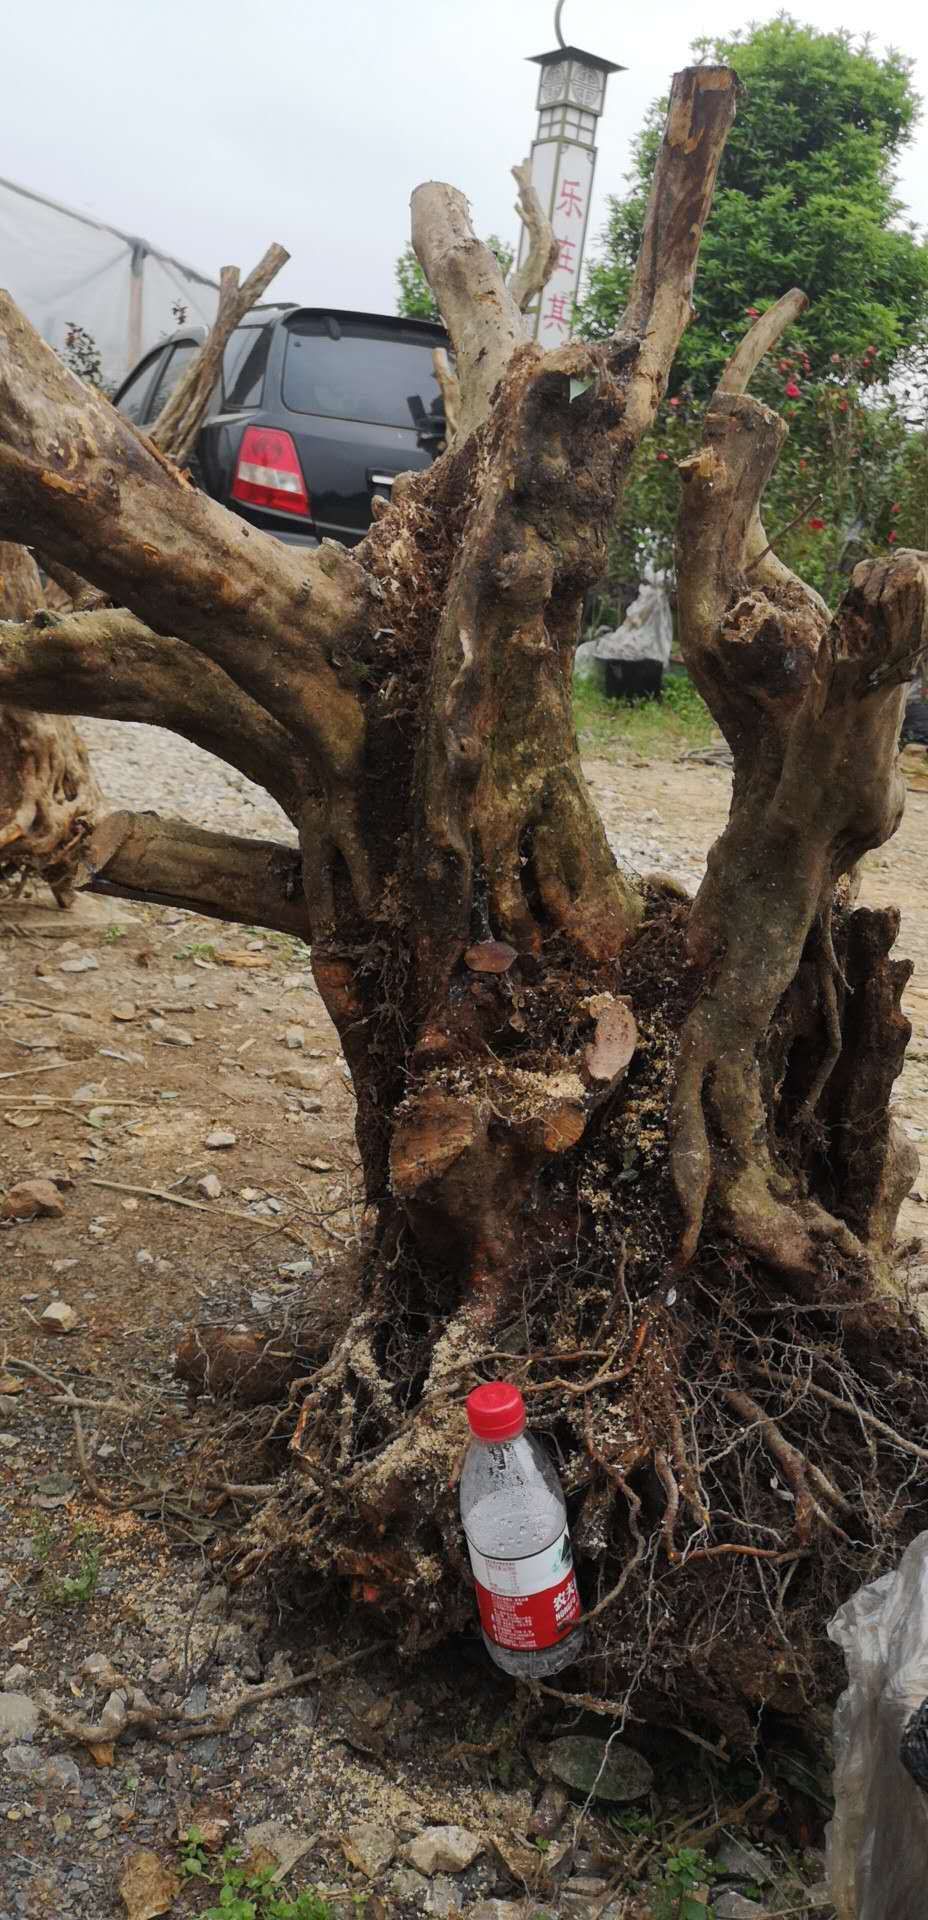 映山红树桩形状好,造型美观,是居家庭院首选!